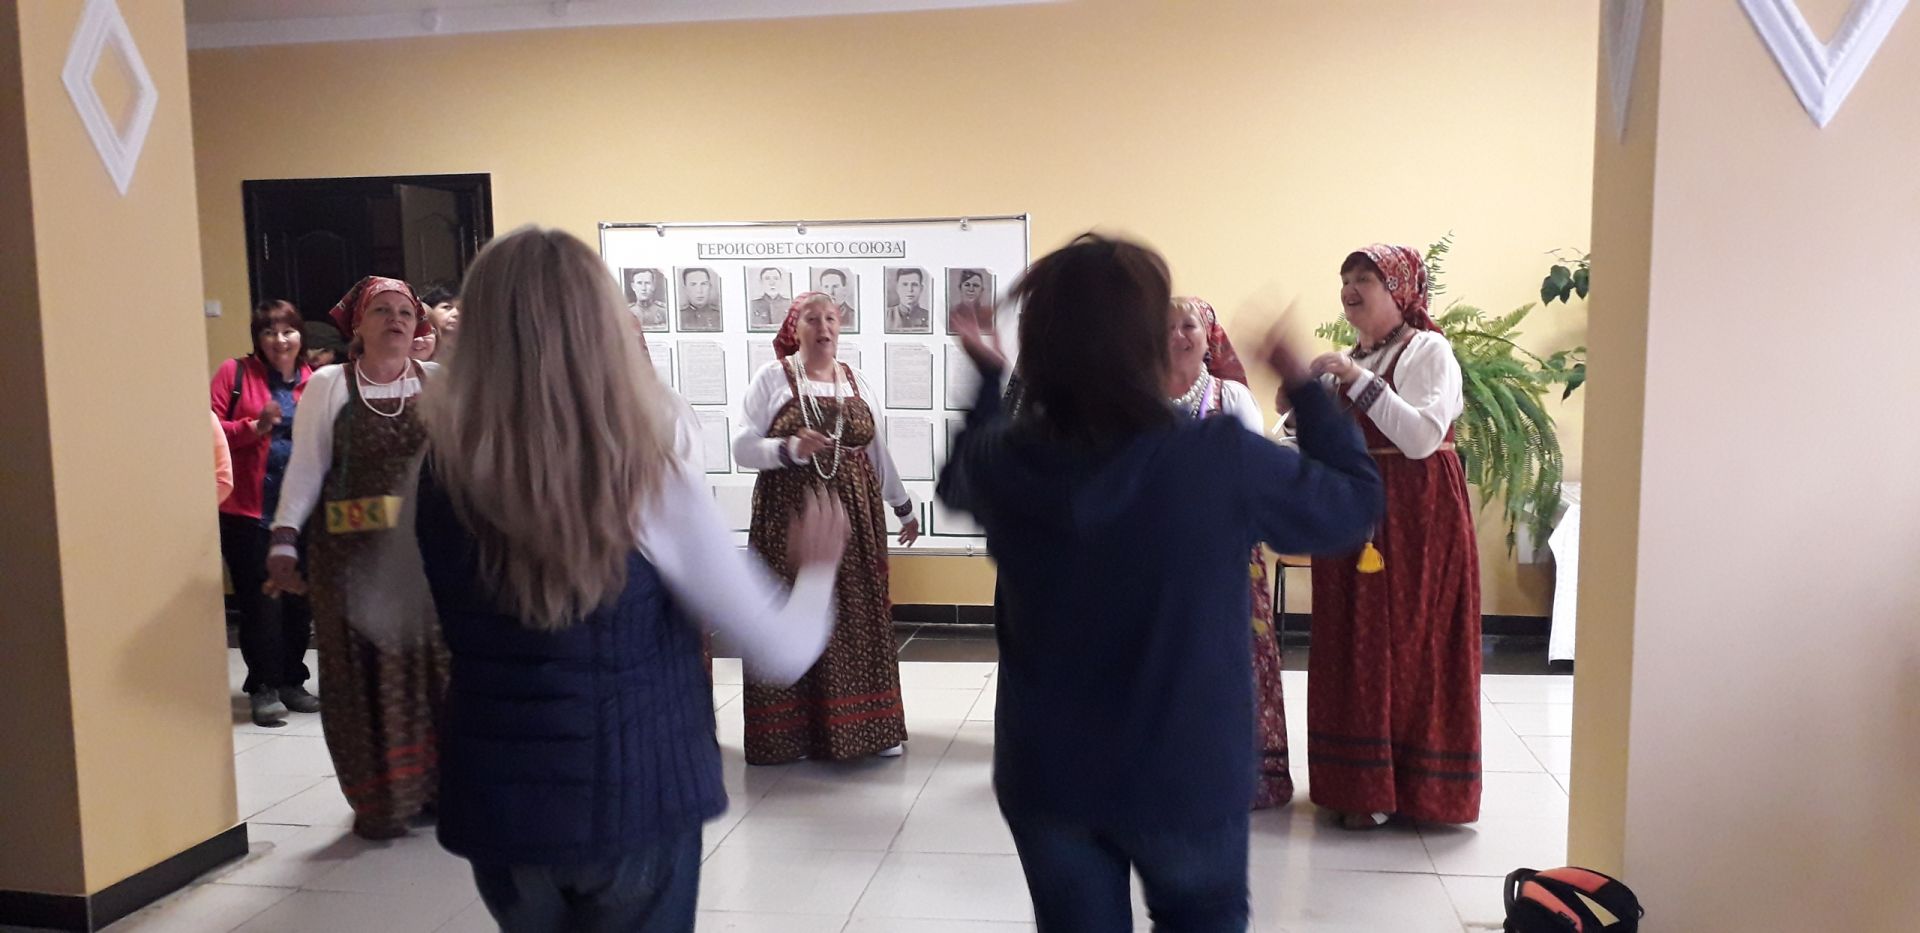 В музее делегацию судмедэкспертов встречал народный коллектив "Калинушка"